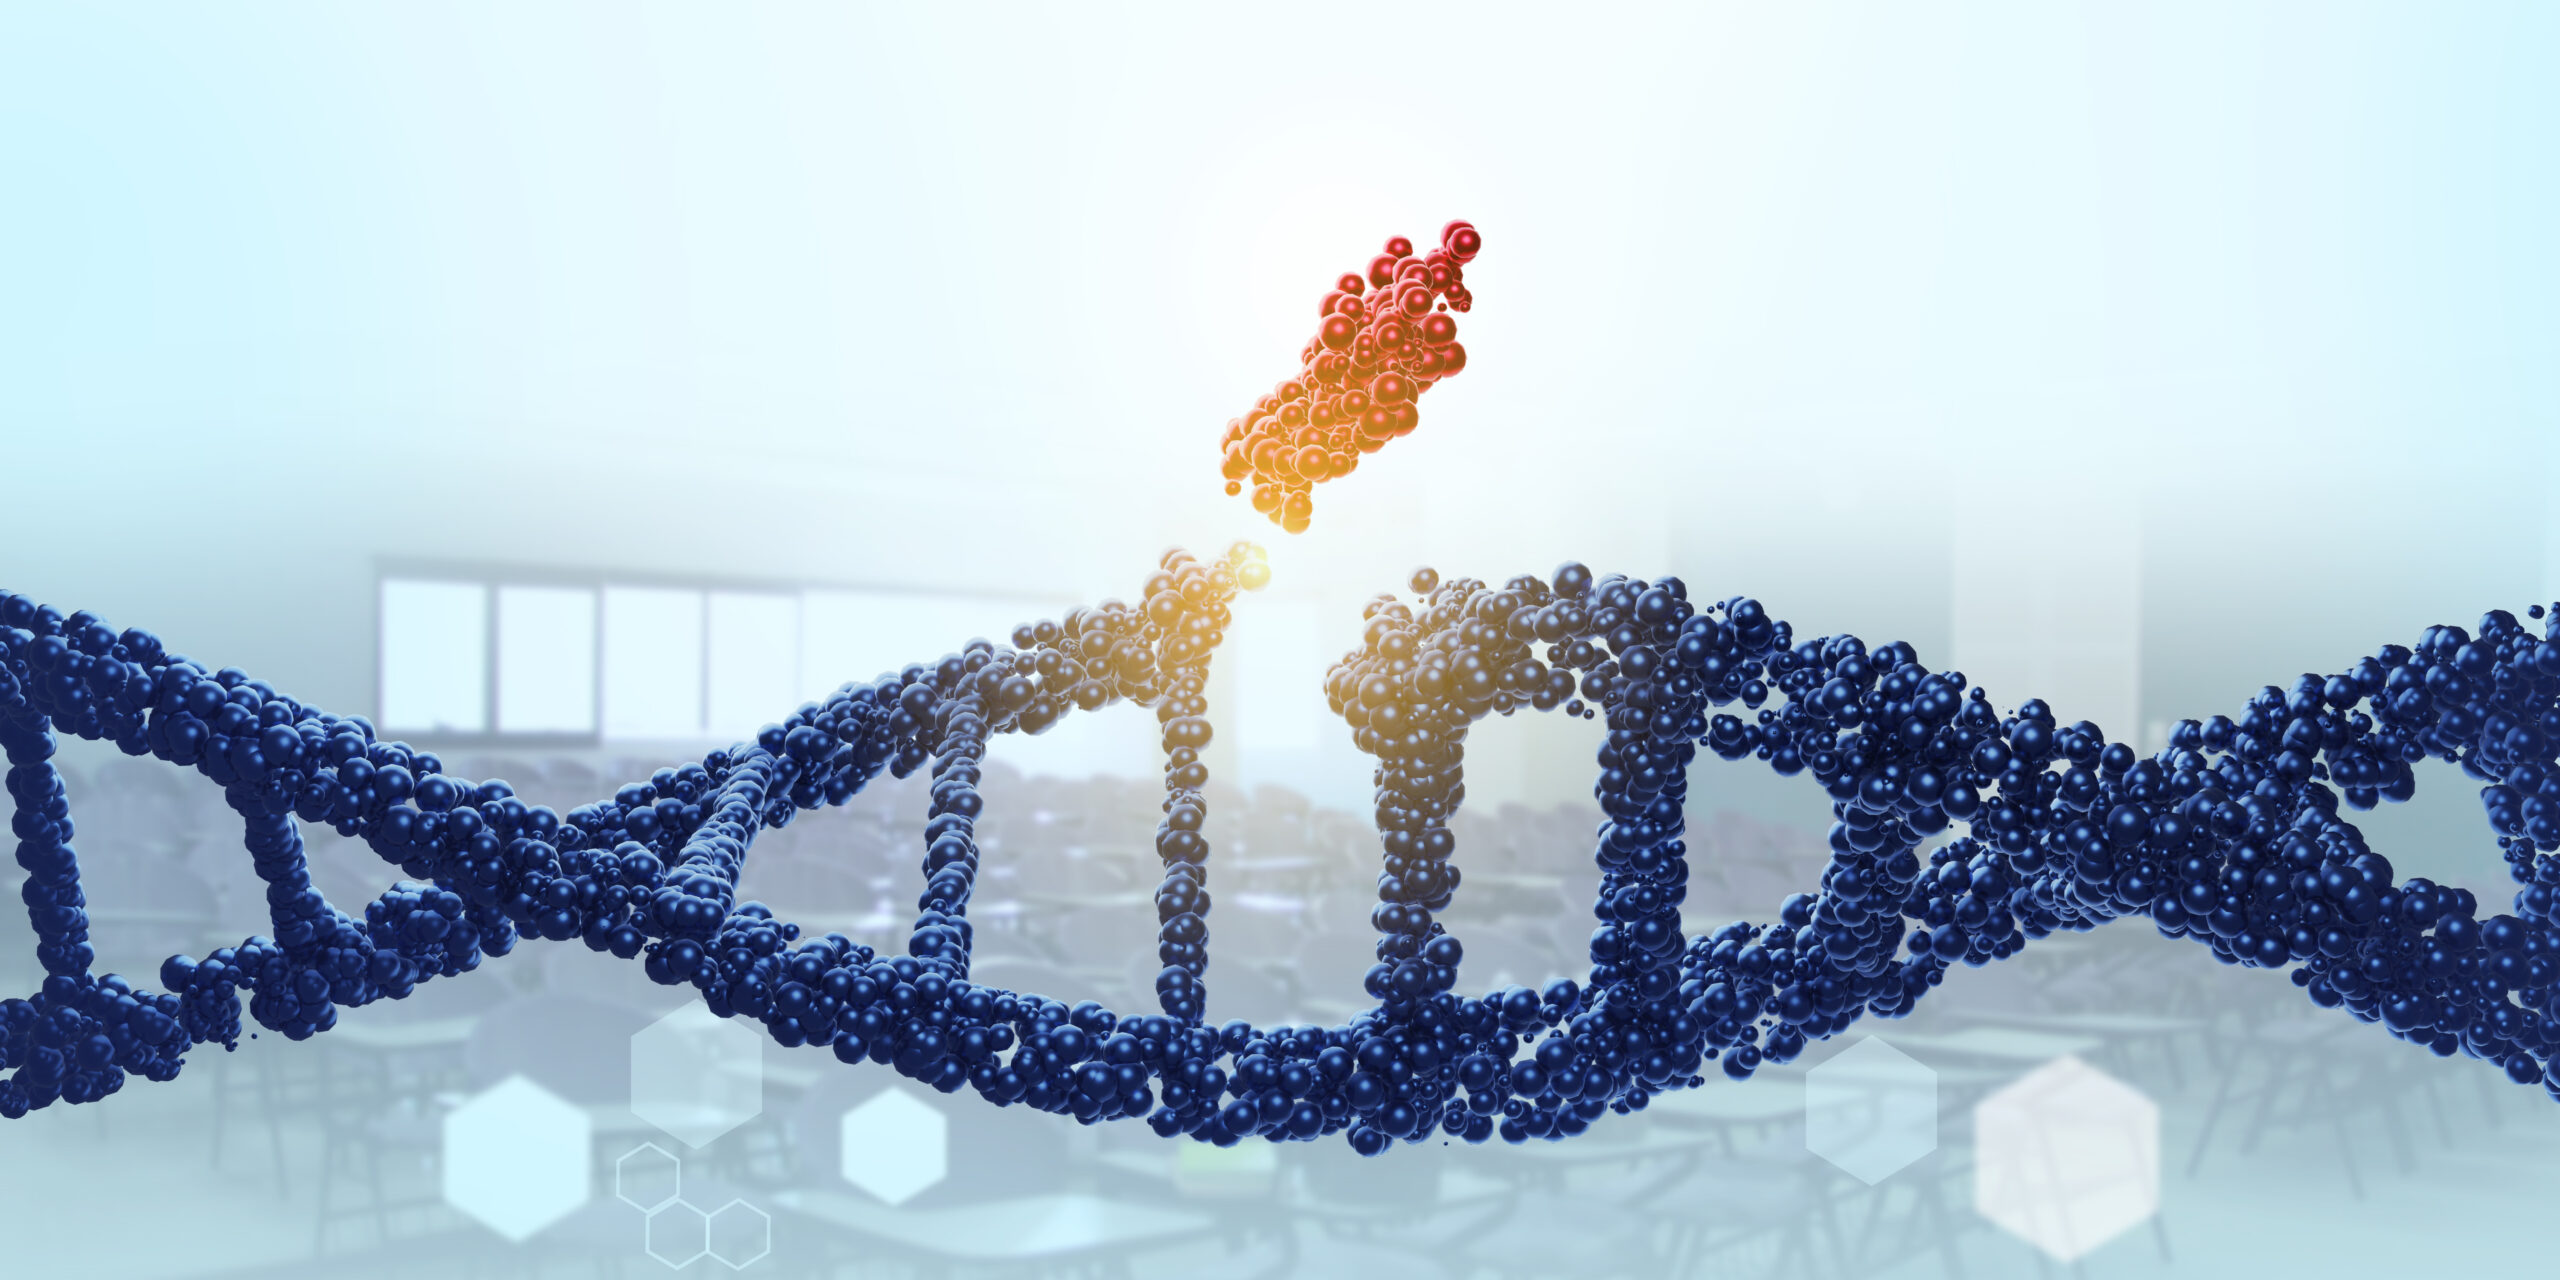 Il ruolo dei geni <br><b>Le mutazioni genetiche</b>